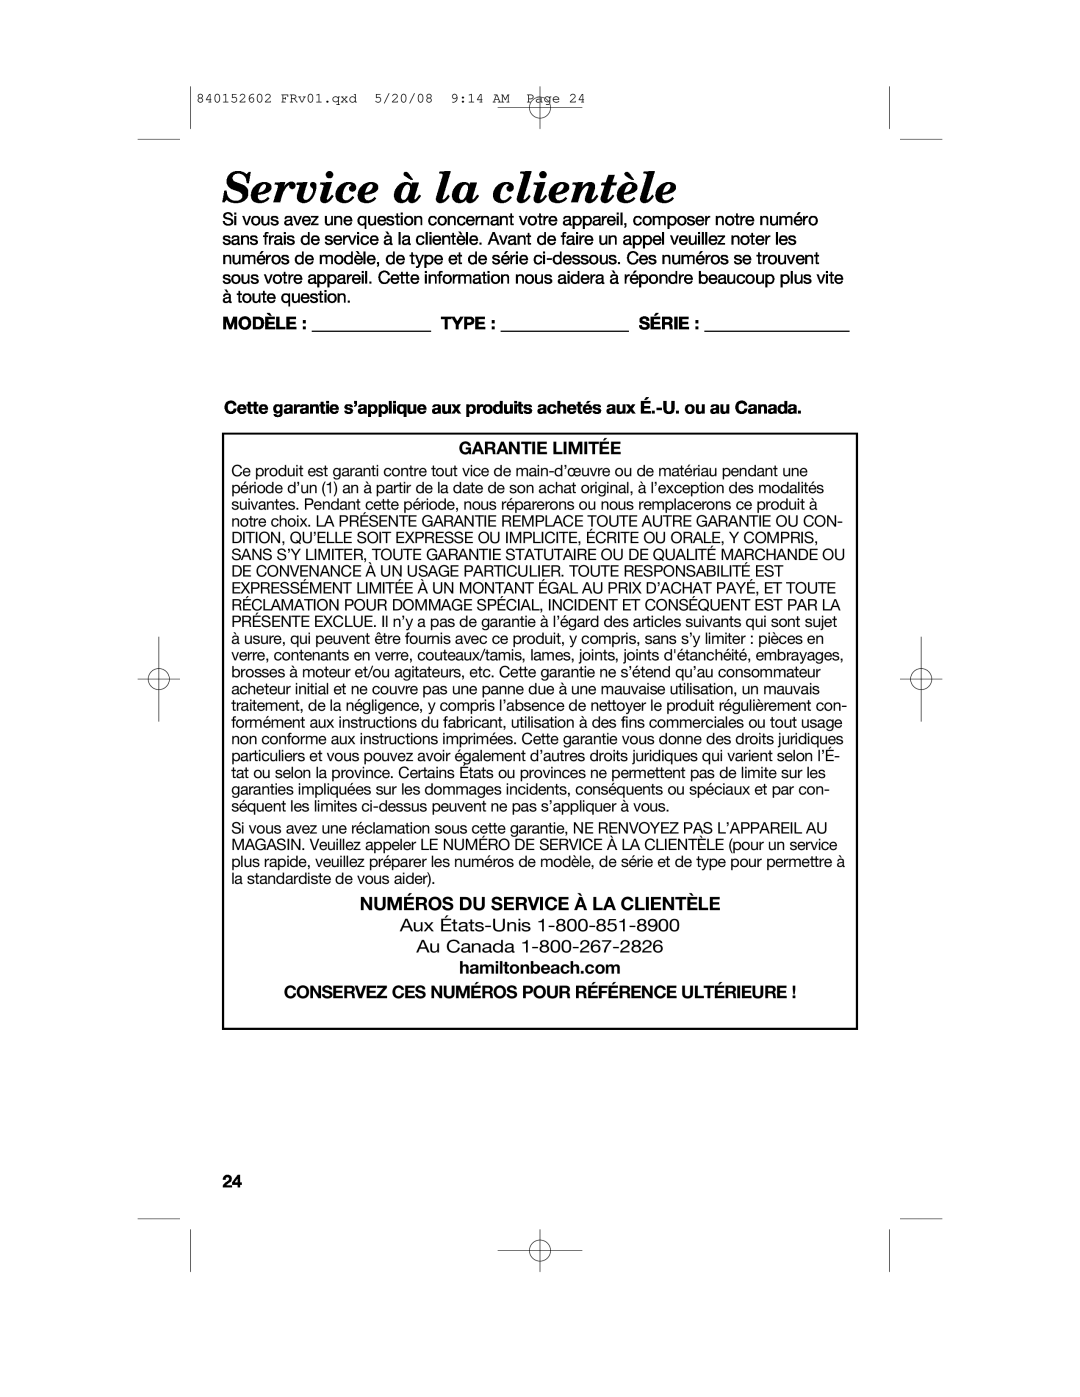 Hamilton Beach 840152602 manual Service à la clientèle, Numéros Du Service À La Clientèle, Garantie Limitée 